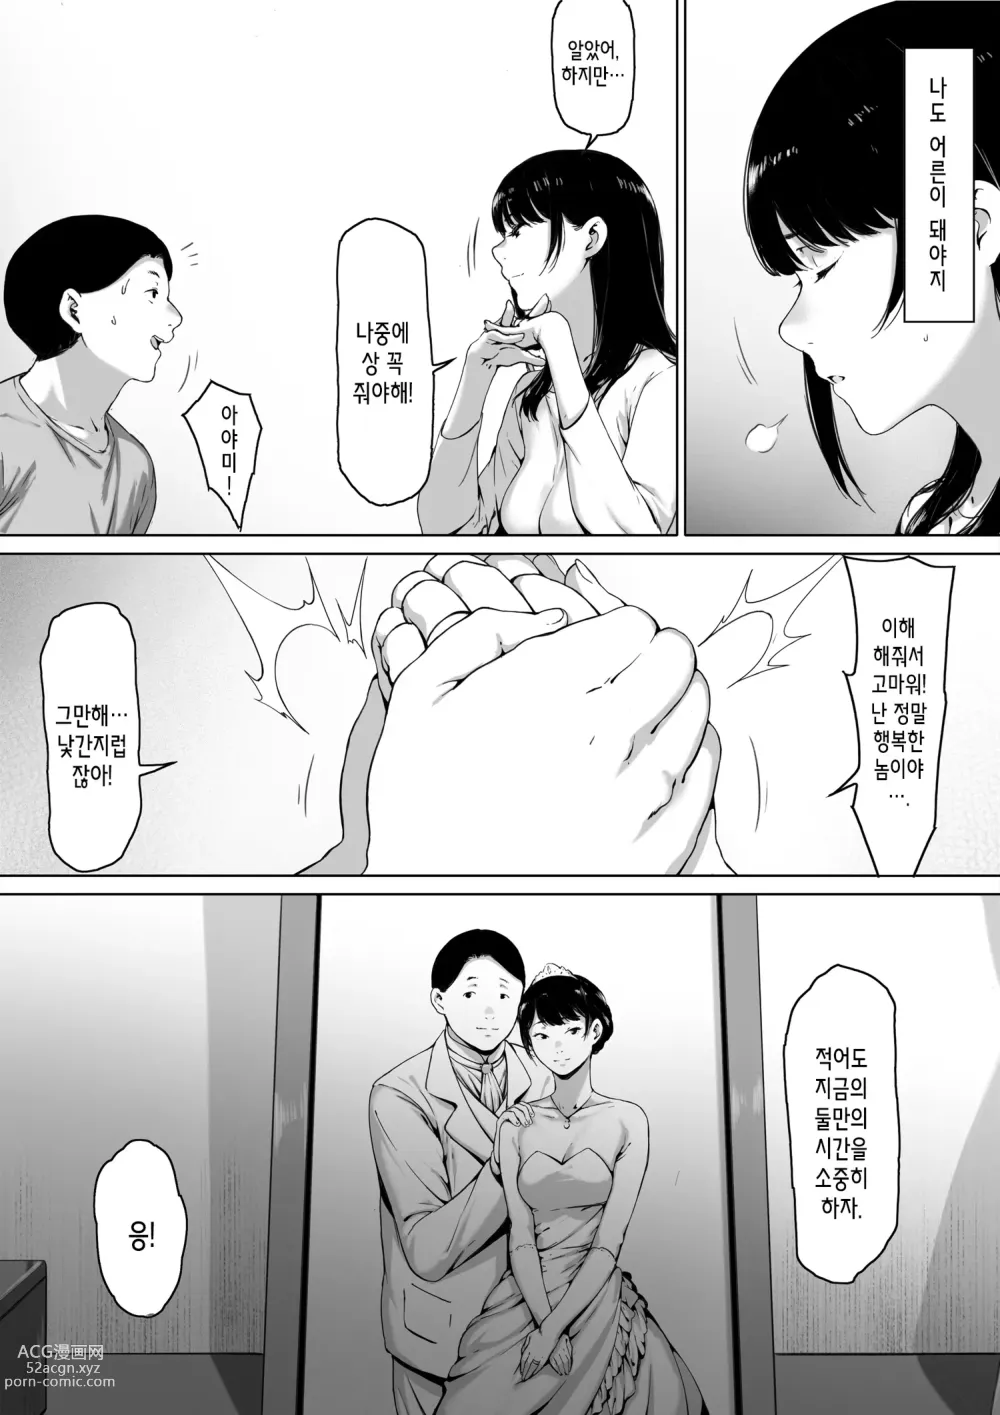 Page 9 of doujinshi 행복한 신혼생활을 보냈어야 했는데 시아버지와 동거하게 됐다 행복한 신혼생활을 보냈어야 했는데